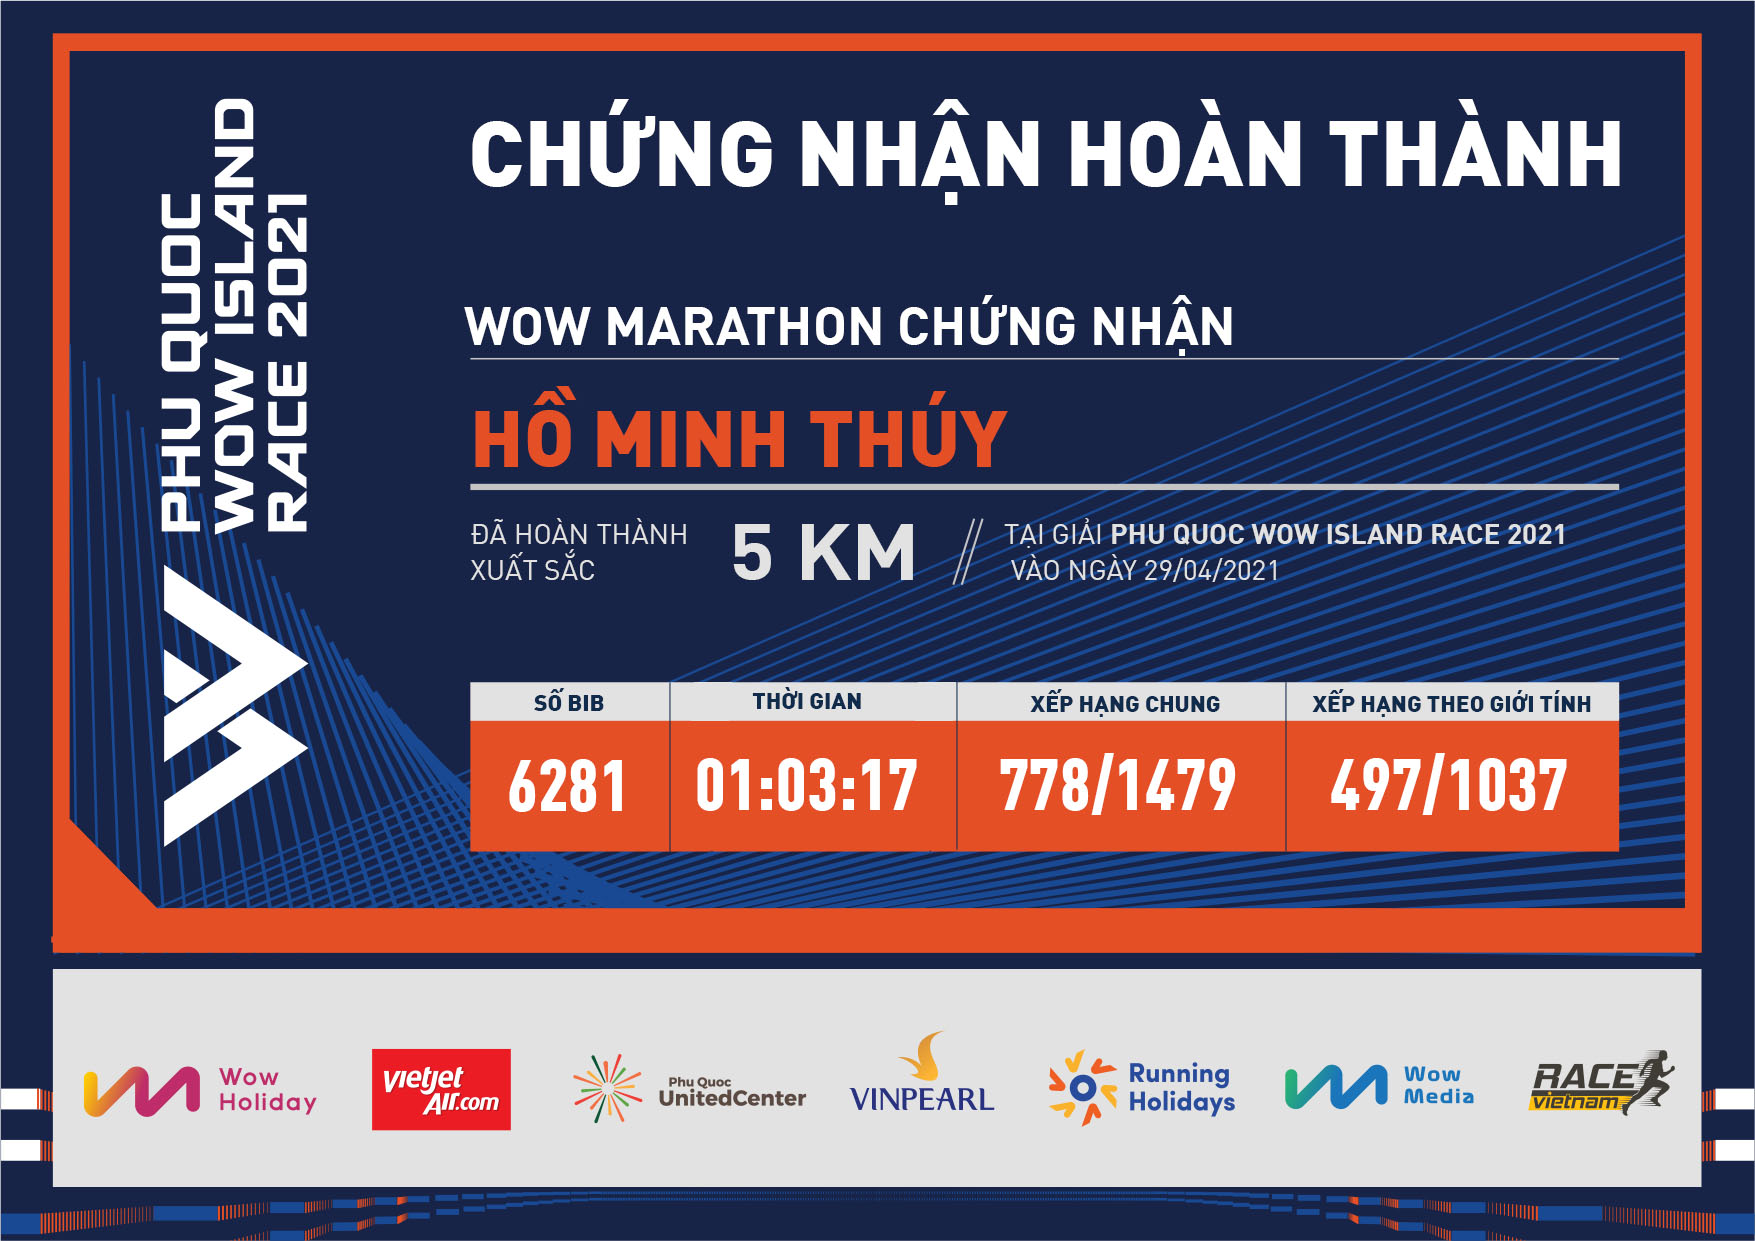 6281 - Hồ Minh Thúy